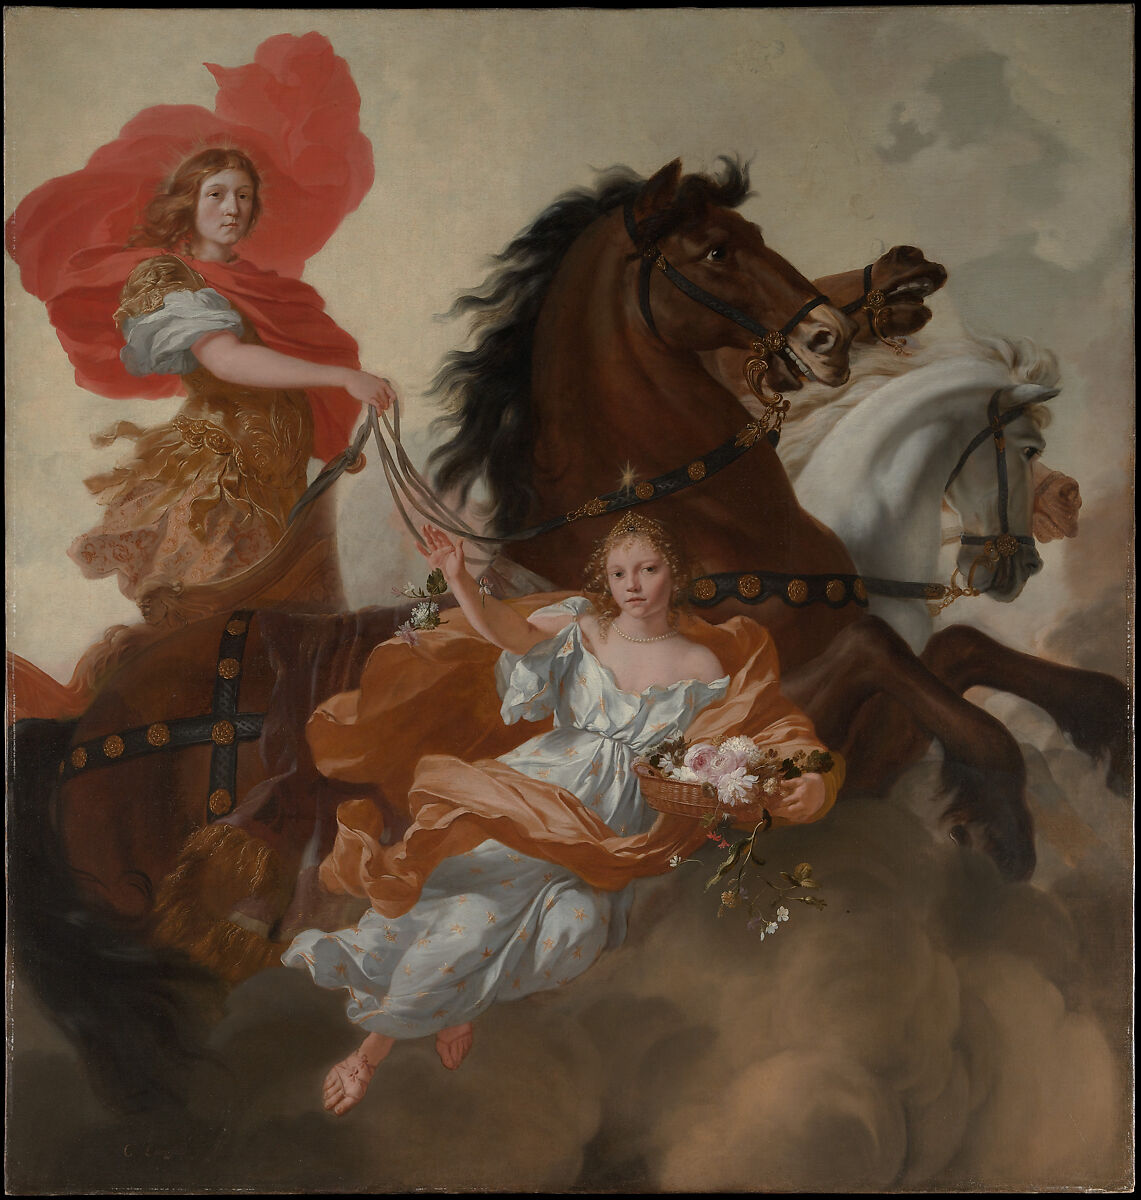 Apollo and Aurora, Gerard de Lairesse, Oil on canvas